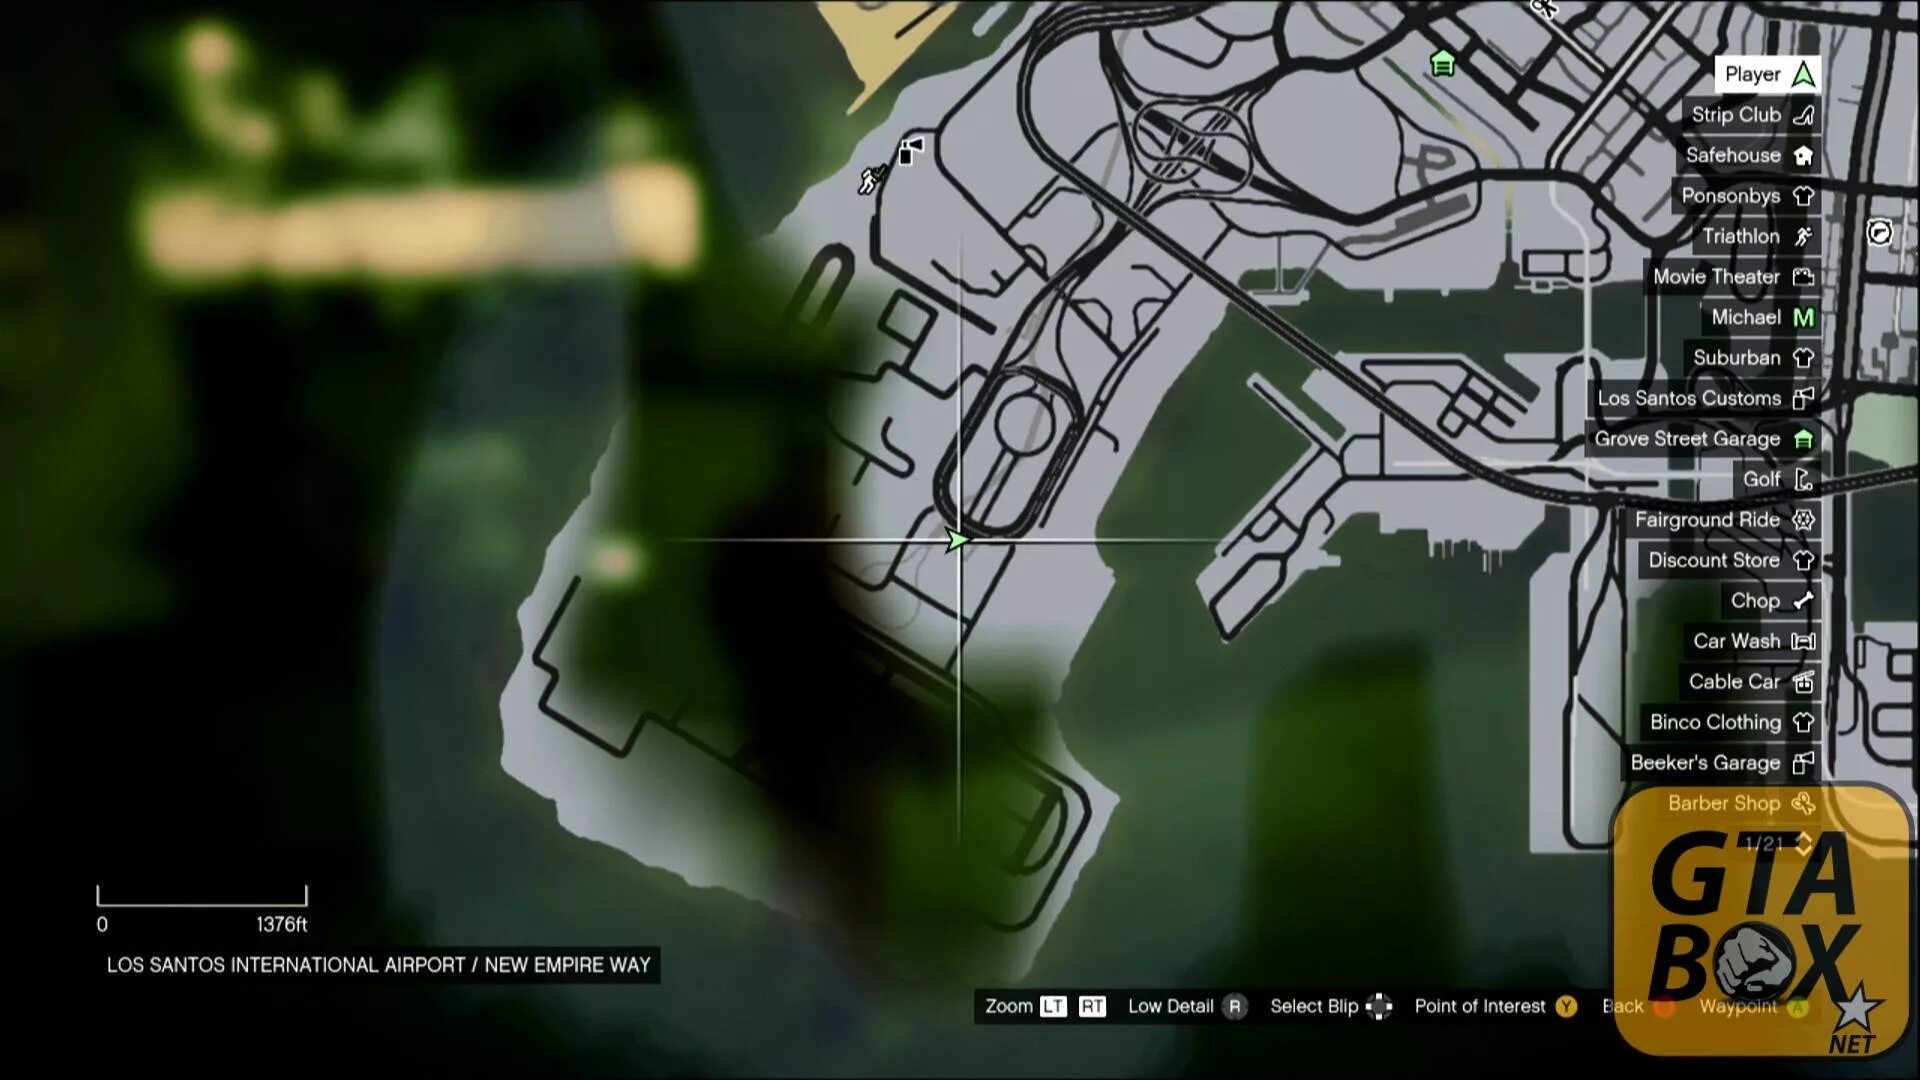 Карта GTA 5 Xbox 360. Карта обрывков письма в GTA 5. Карта всех писем в ГТА 5. Карта обрывков в ГТА 5. Карта обрывков писем